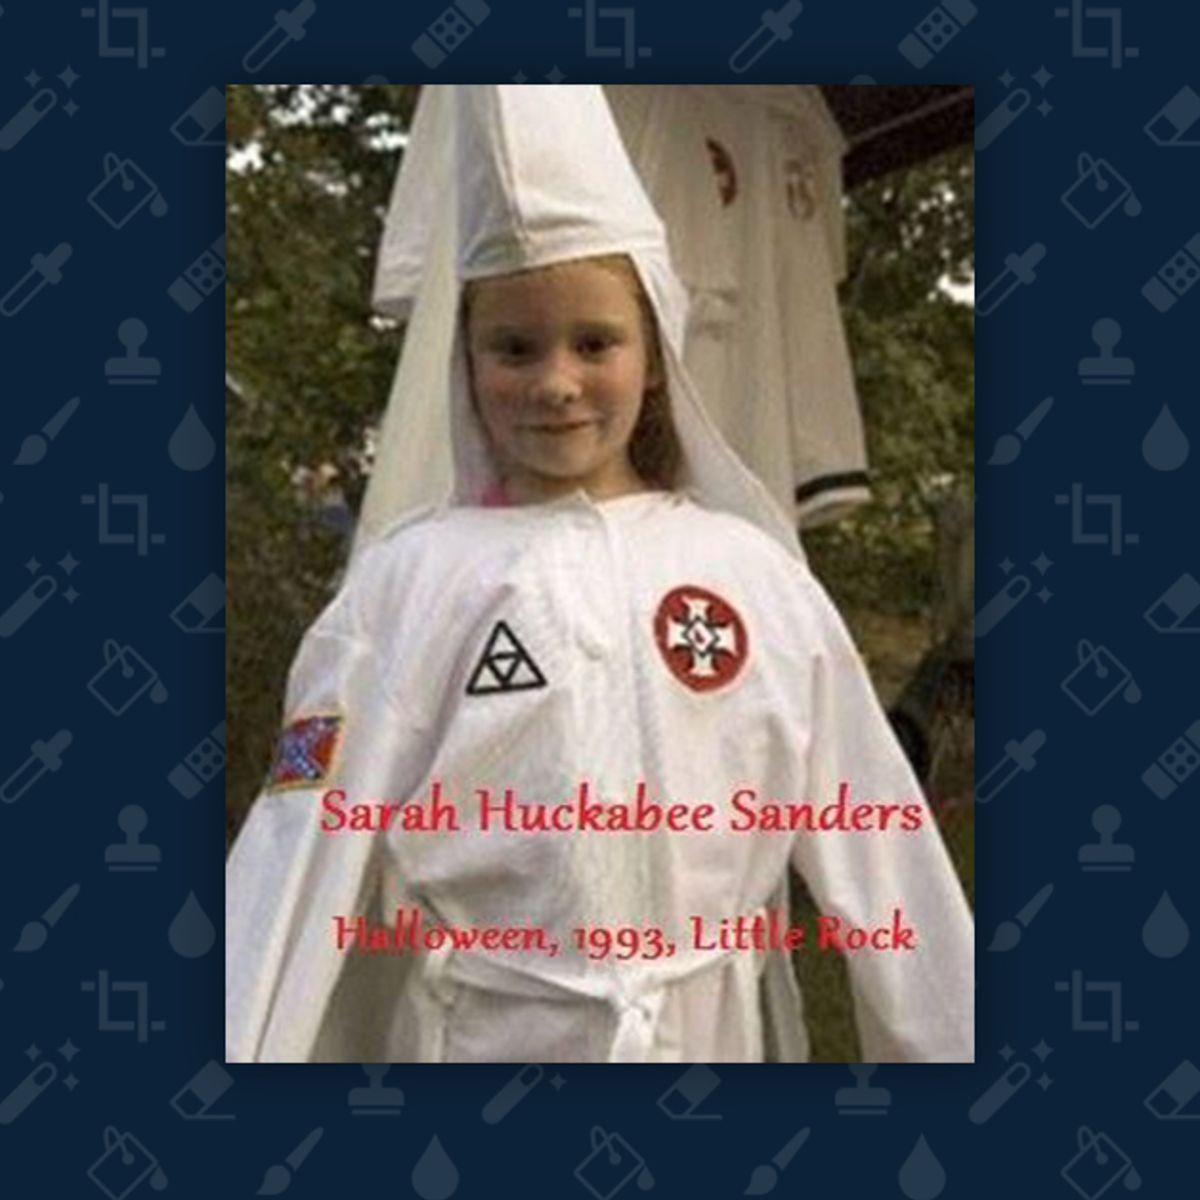 Did Sarah Huckabee Sanders Wear a KKK Halloween Costume in 1993?